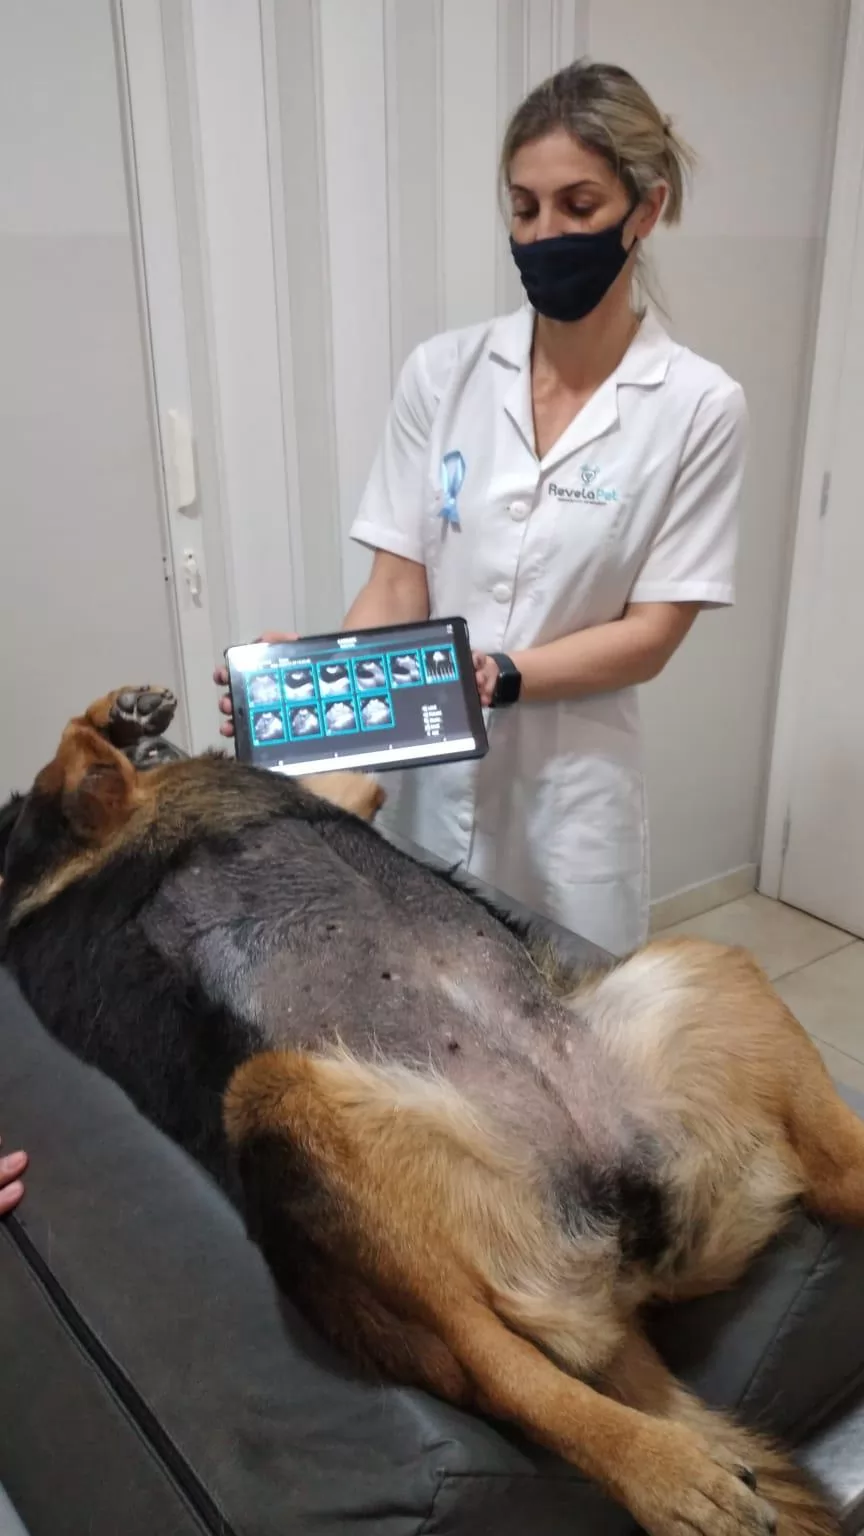 Veterinary Ultrasound Machine